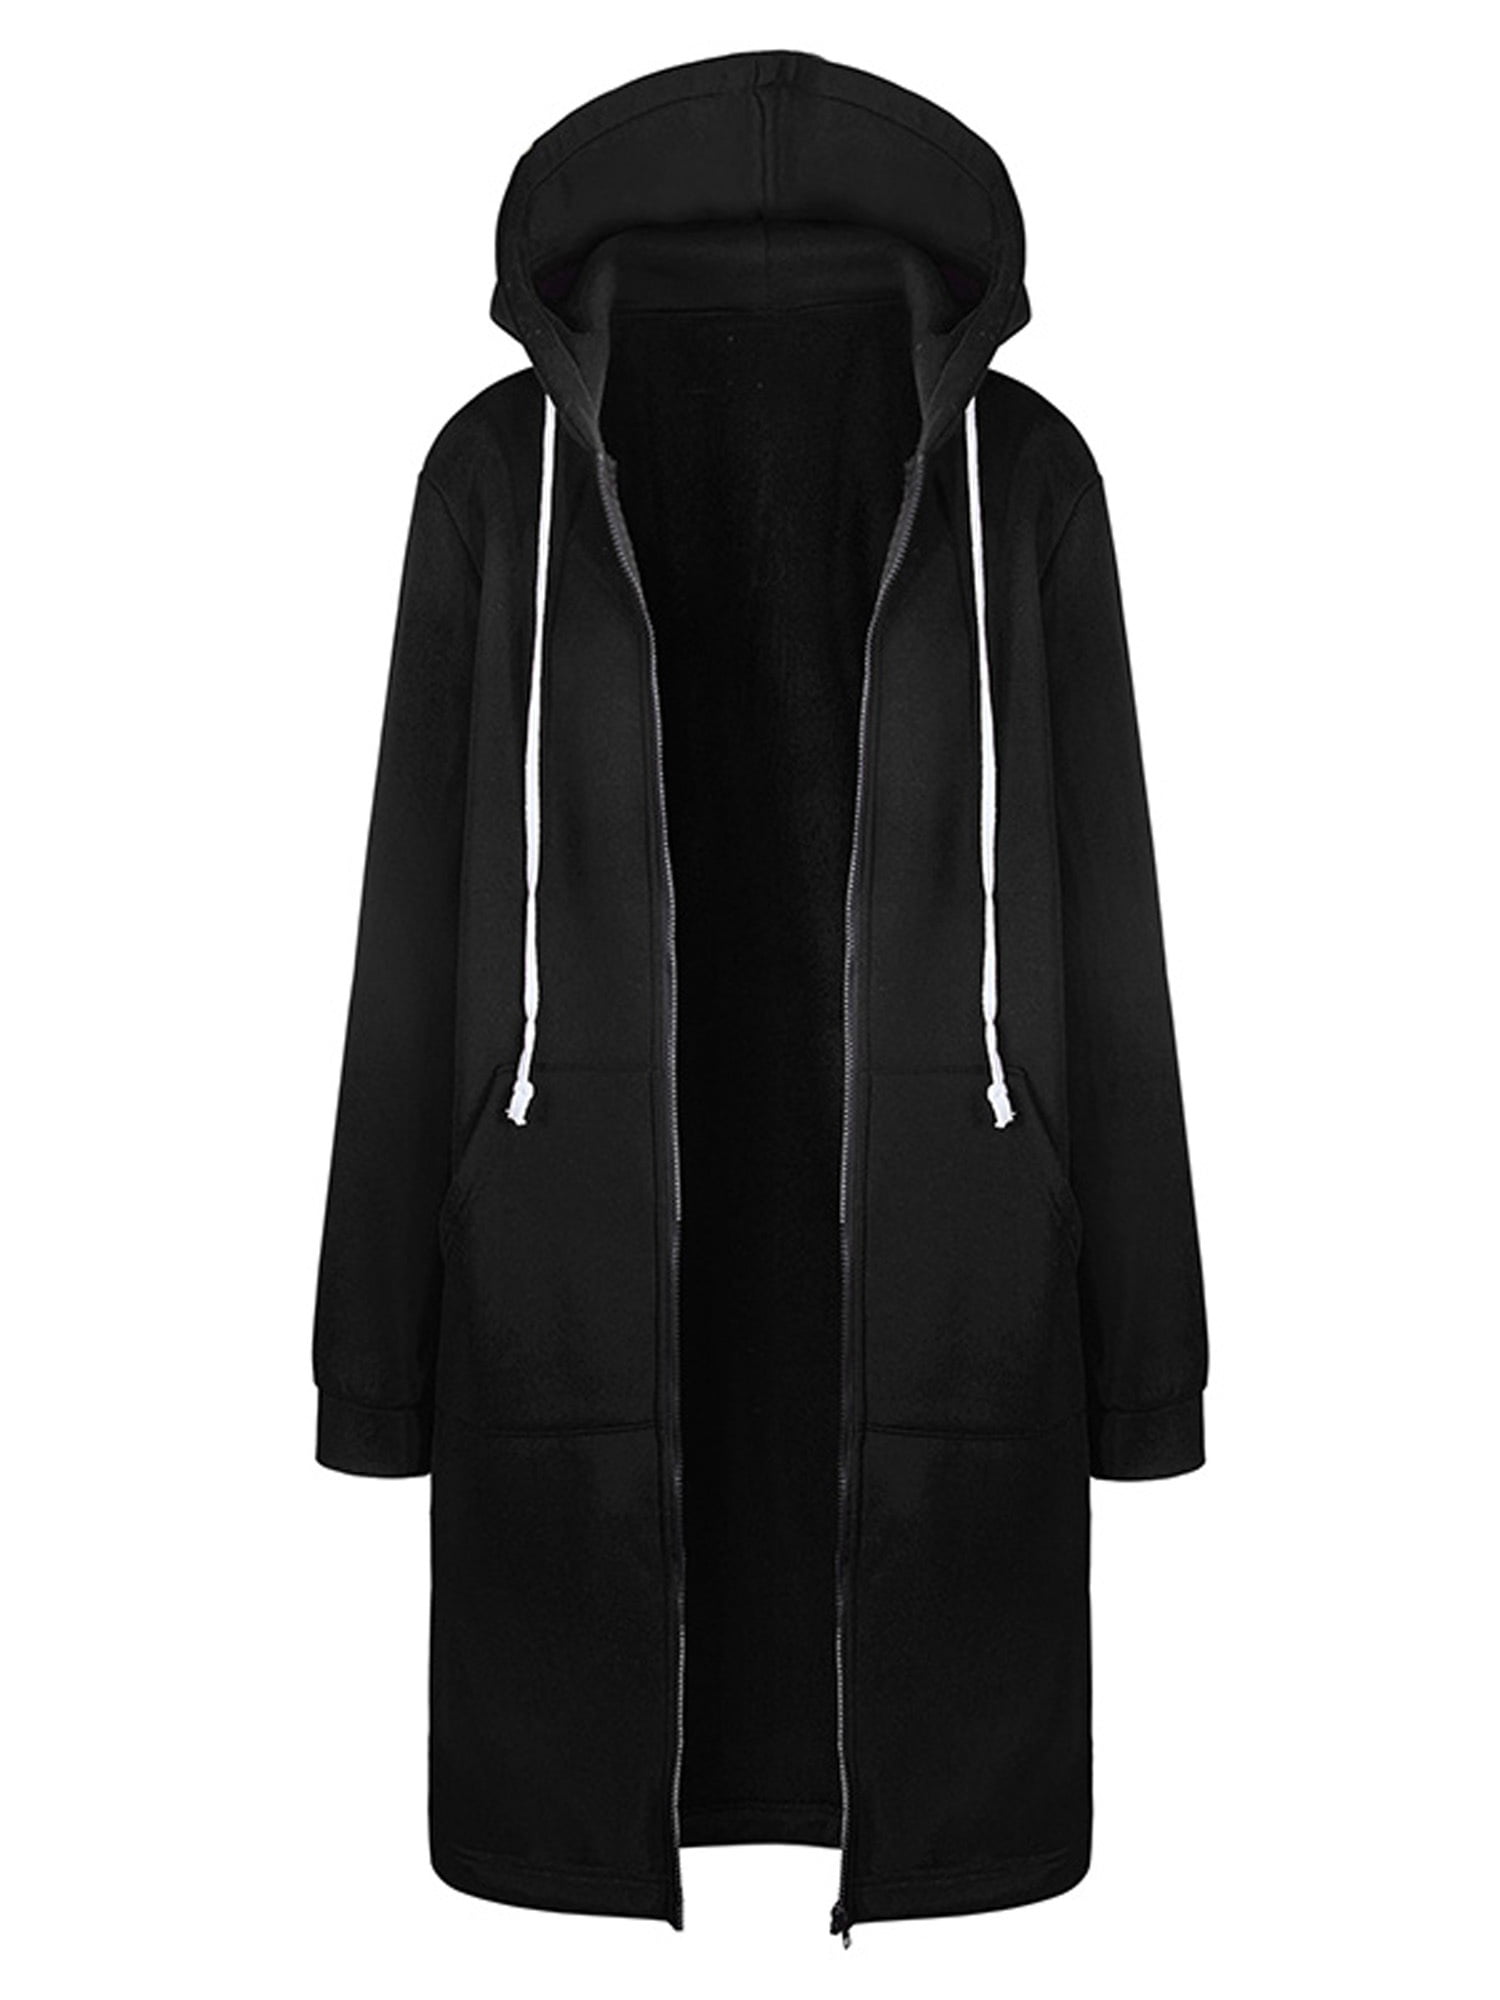 iHAZA Hooded Zipper Pullover Long Coat Women Sweatshirt Hoodie Jacket Outwear 